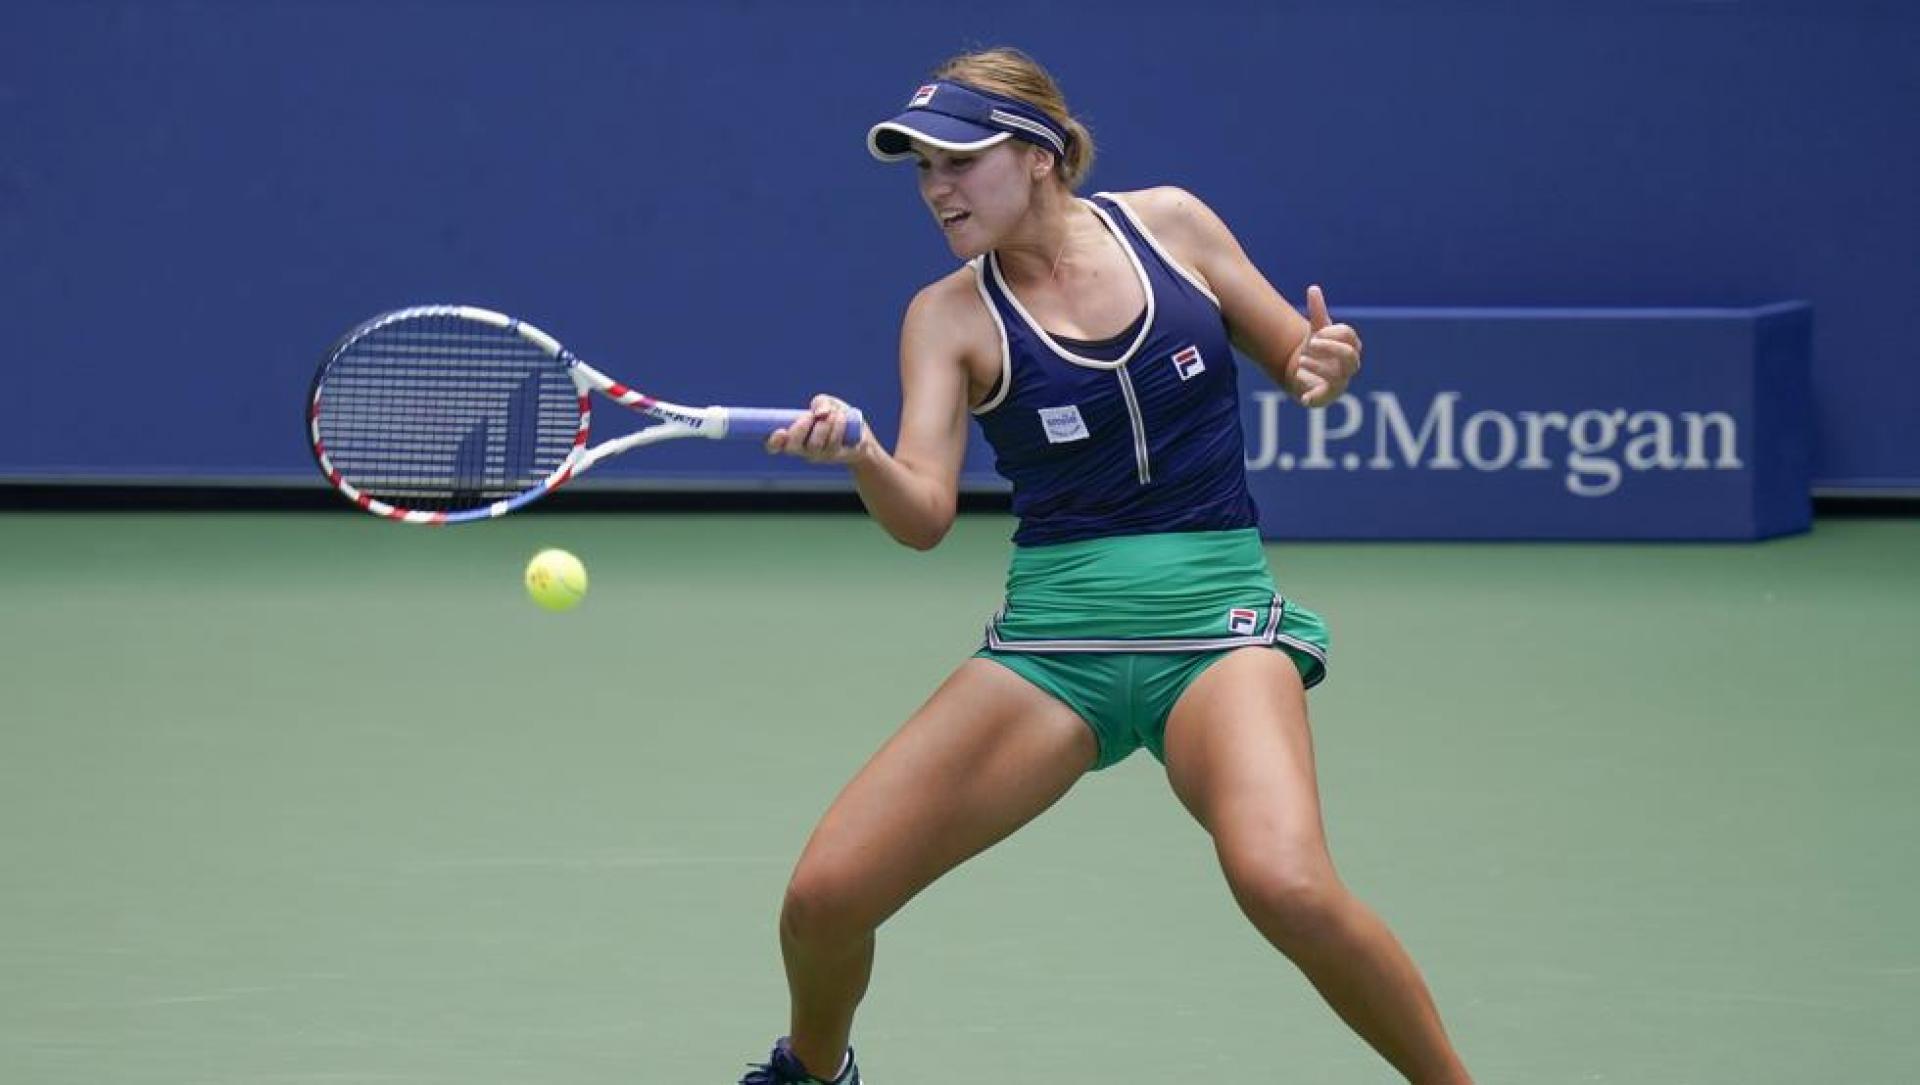 French Open: Sofia Kenin will face unseeded Iga Swiatek in final